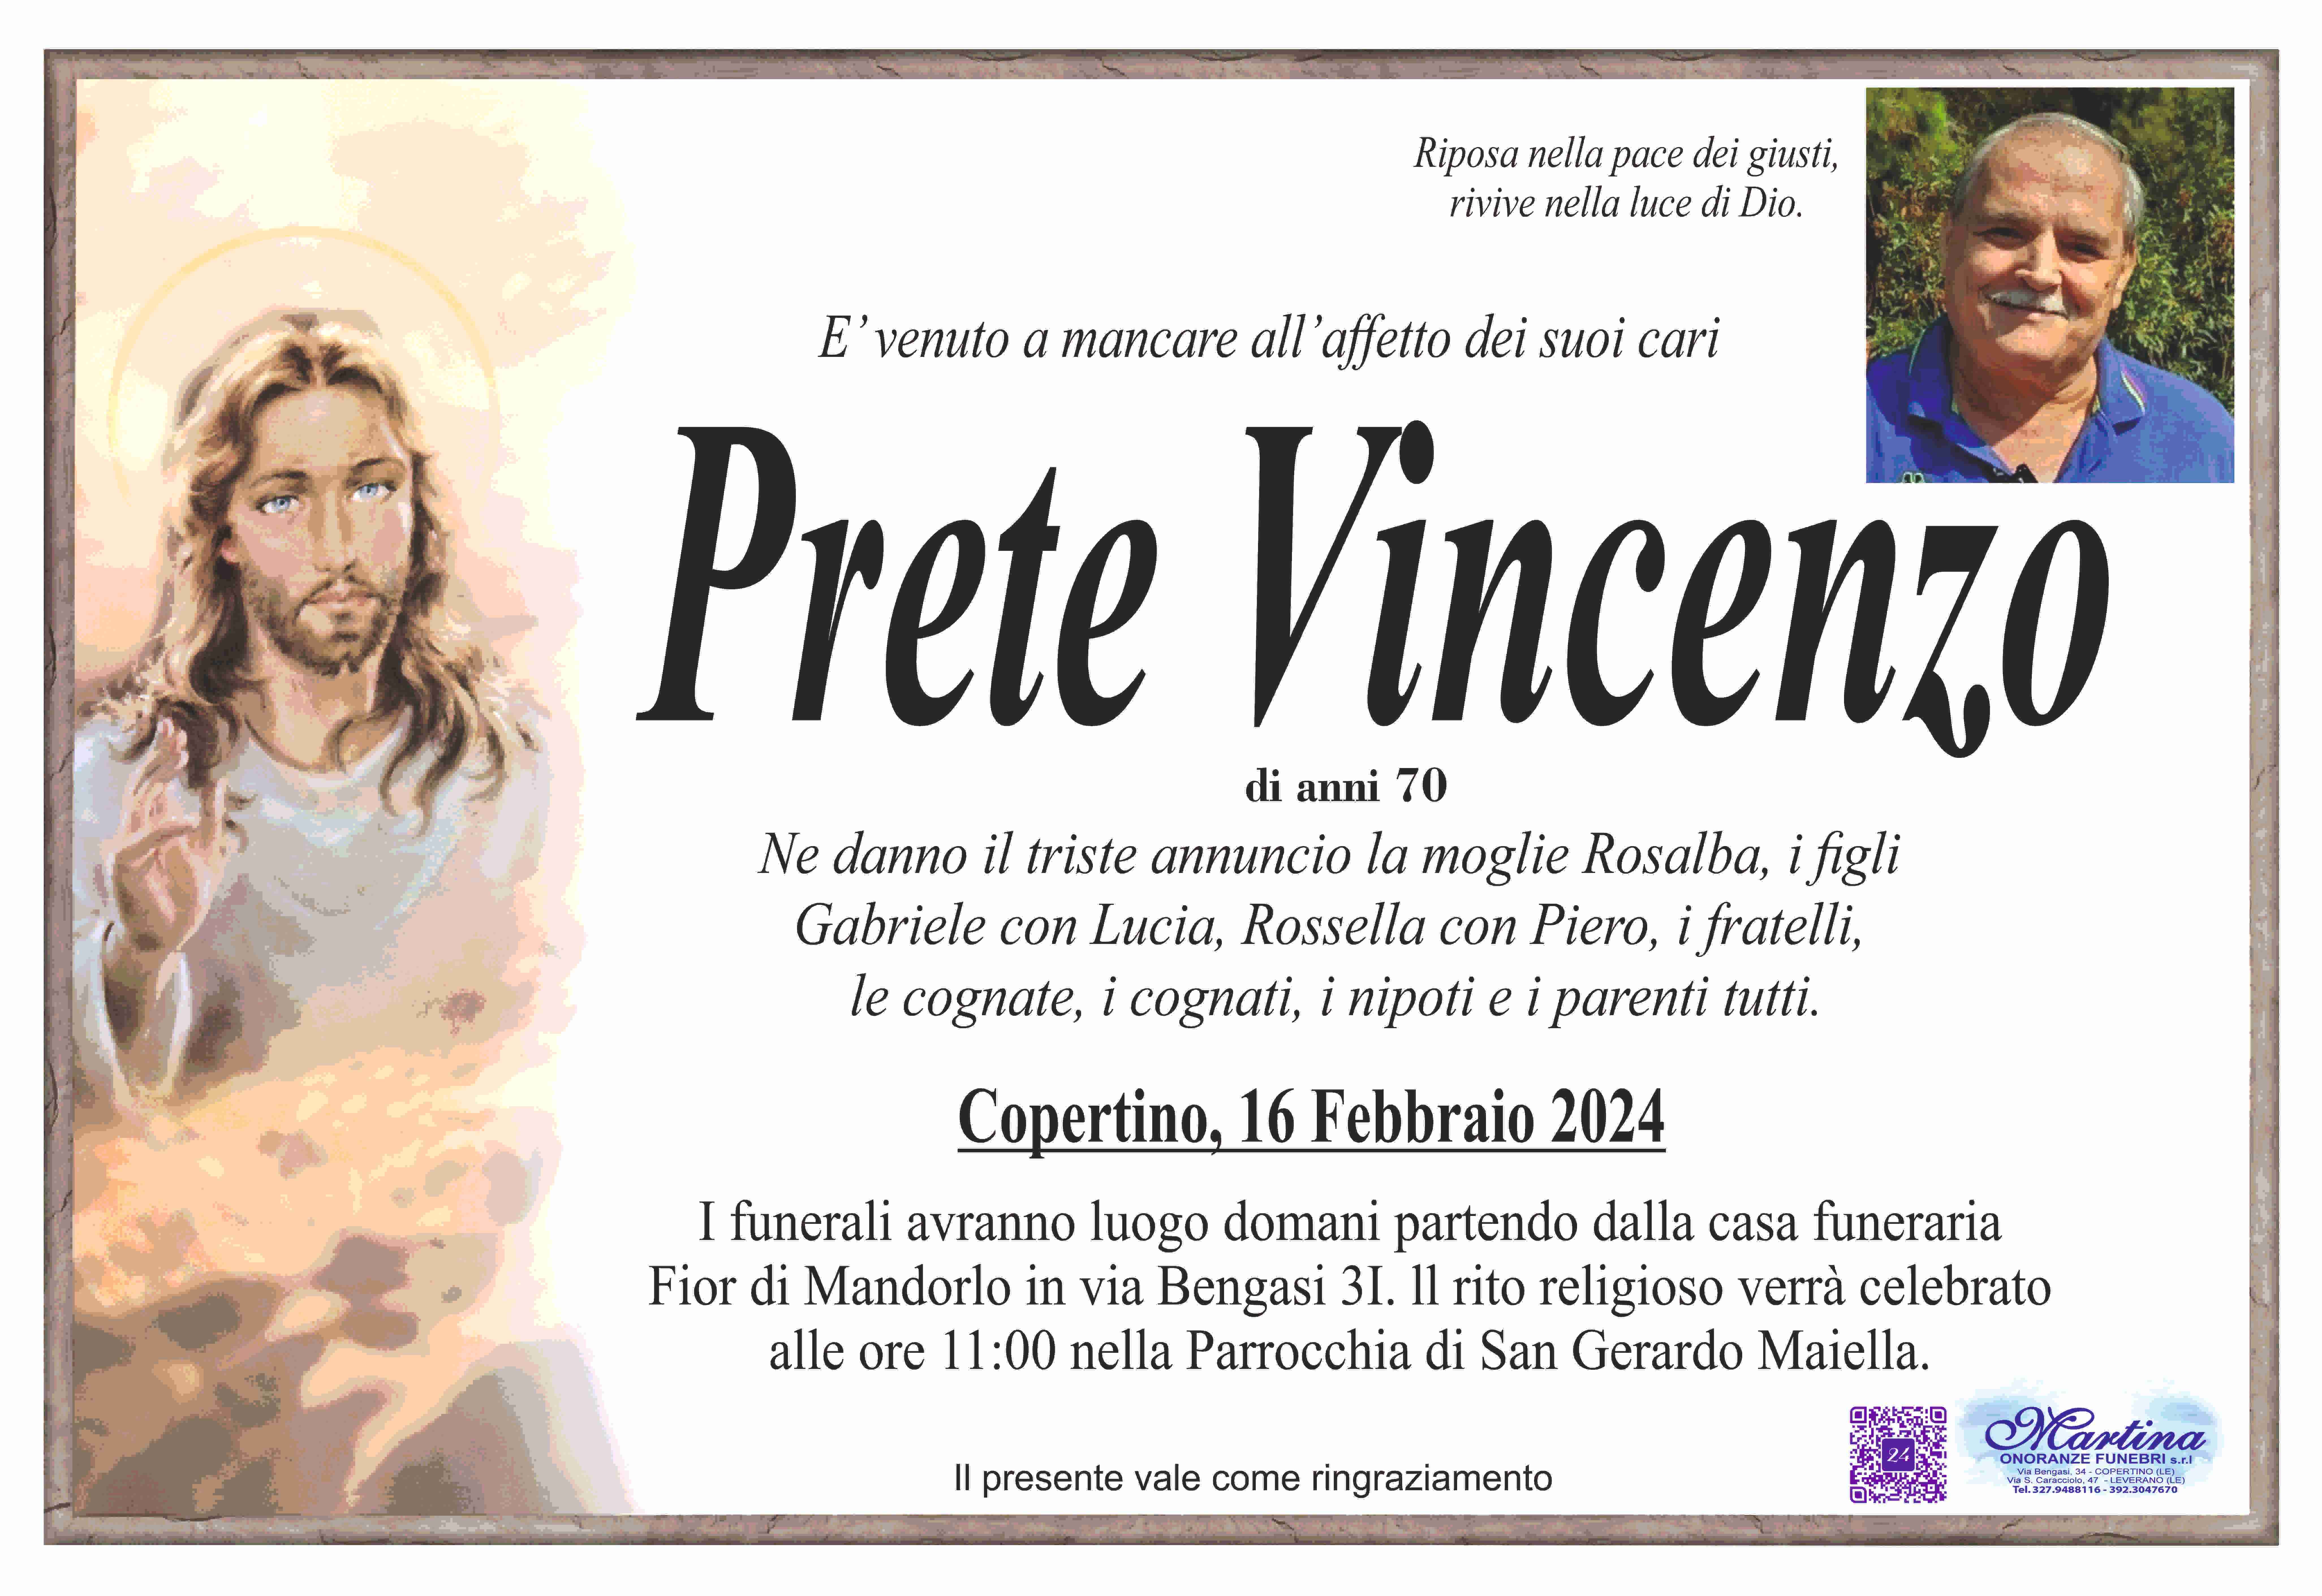 Vincenzo Prete